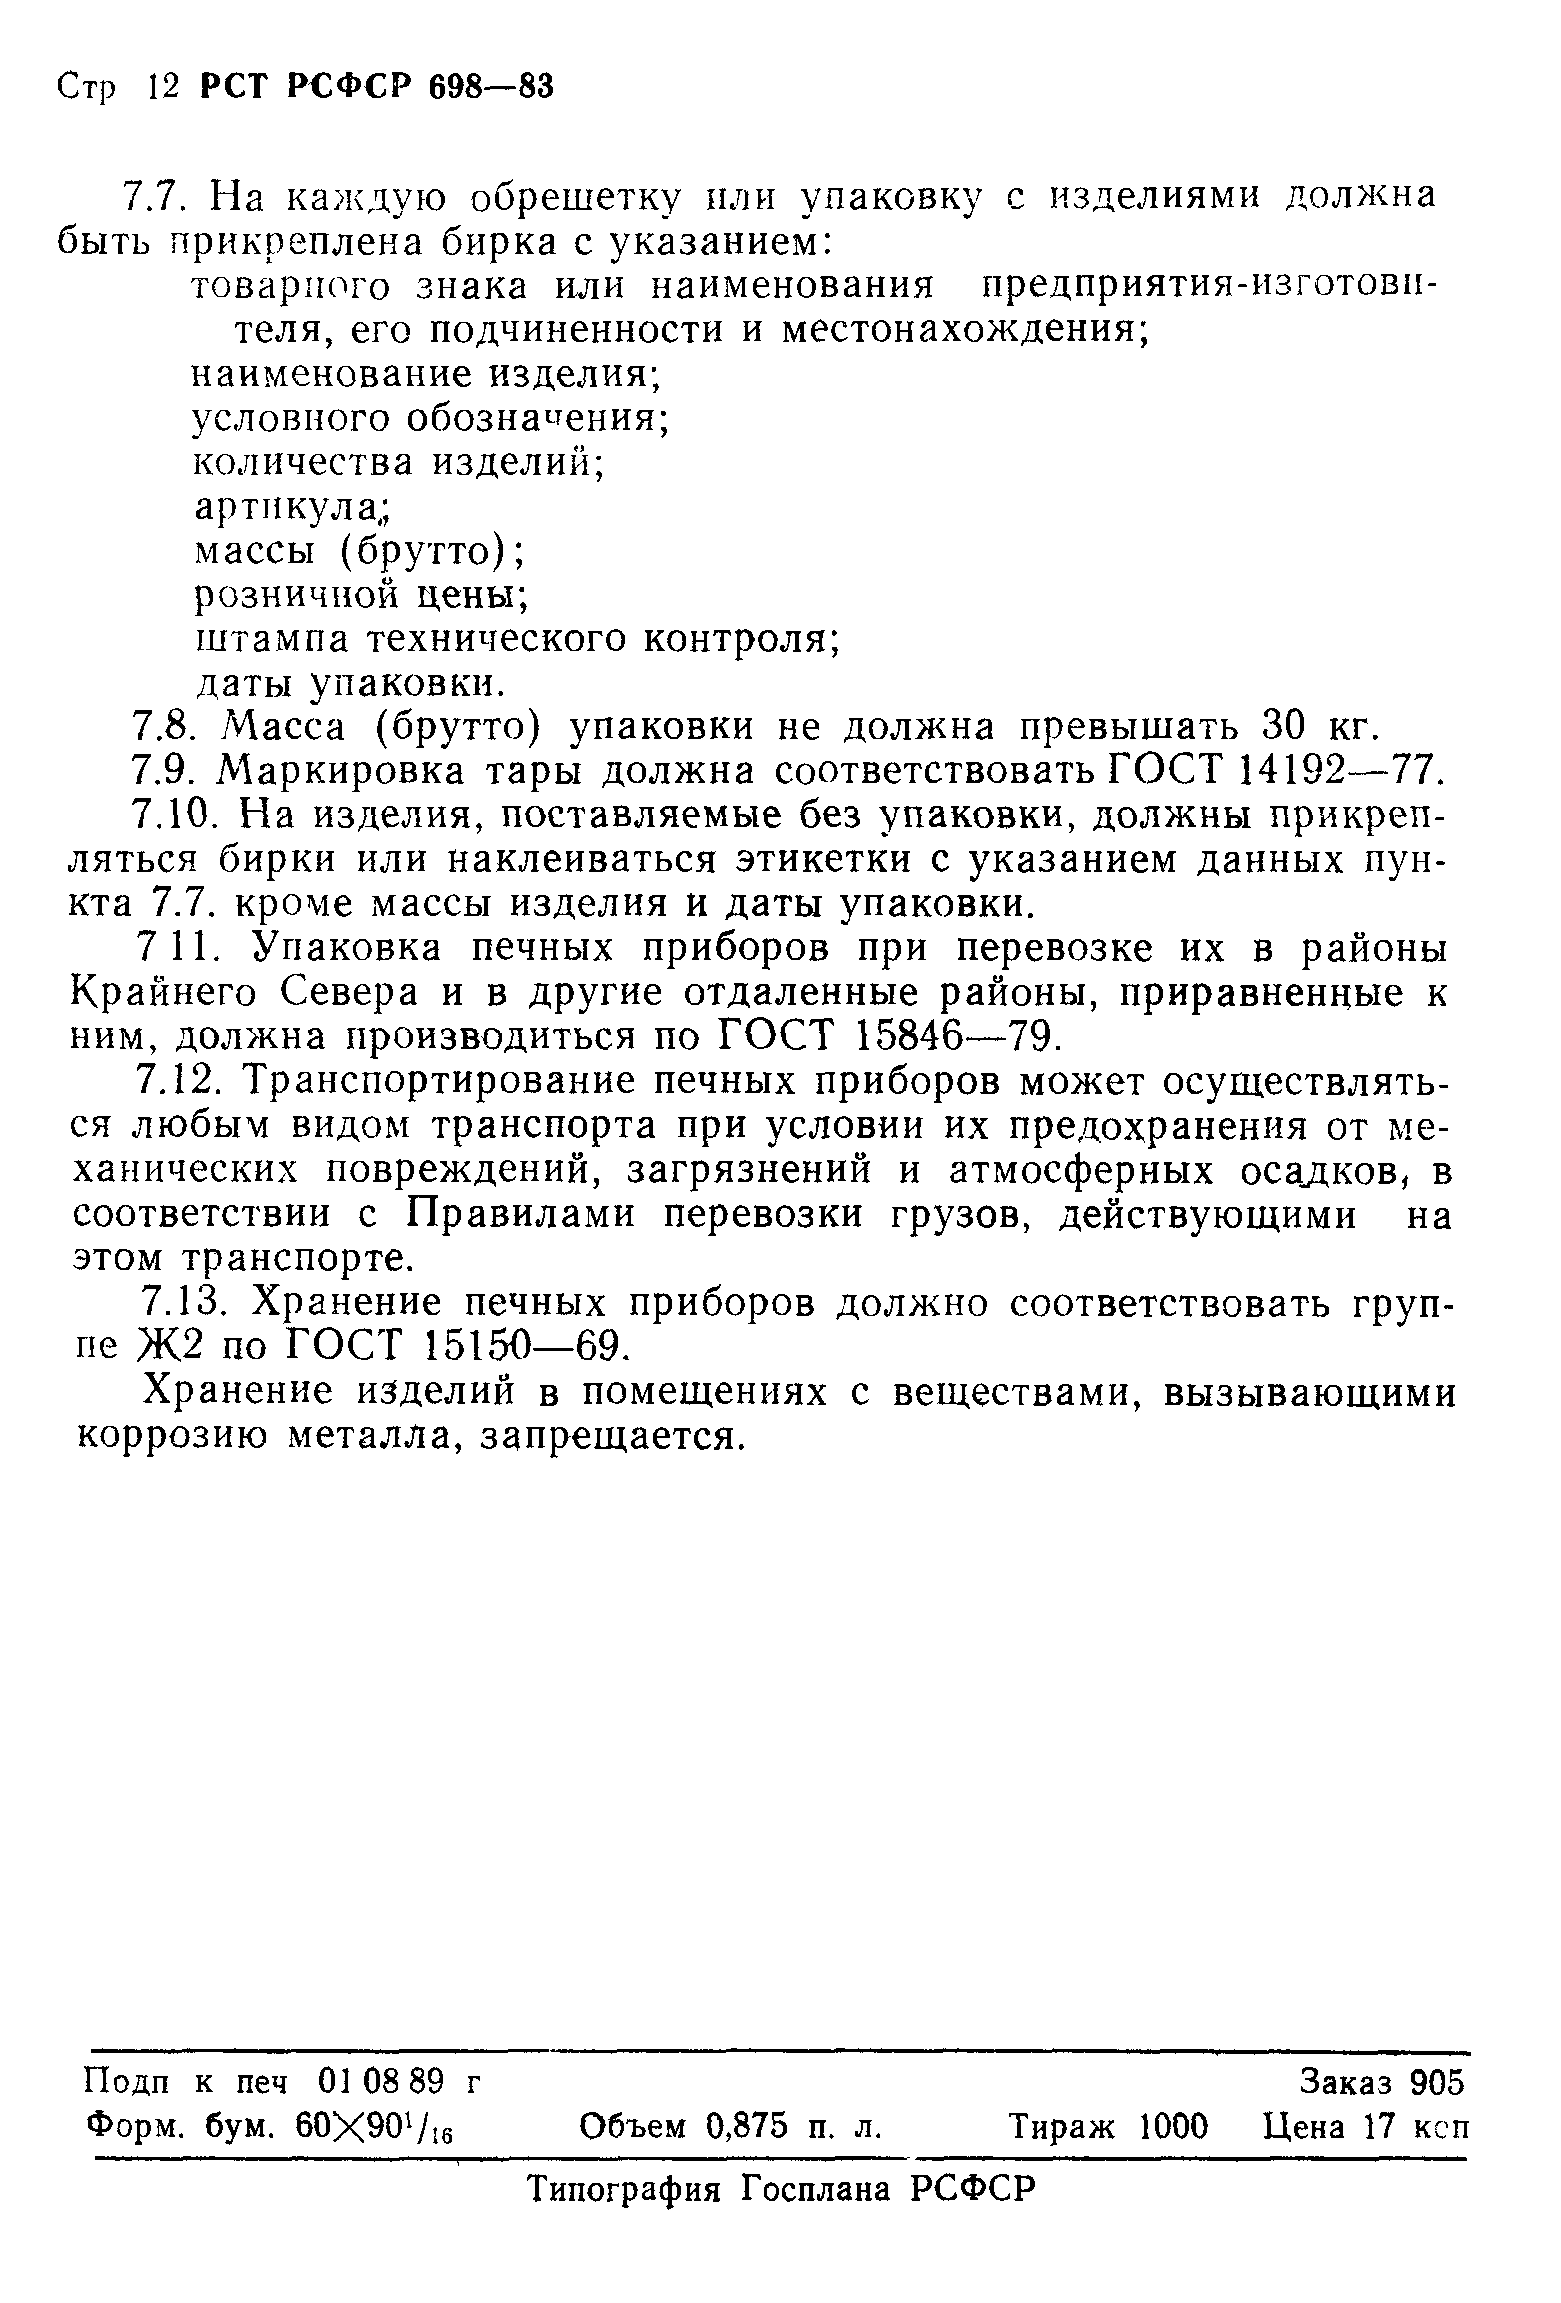 РСТ РСФСР 698-83